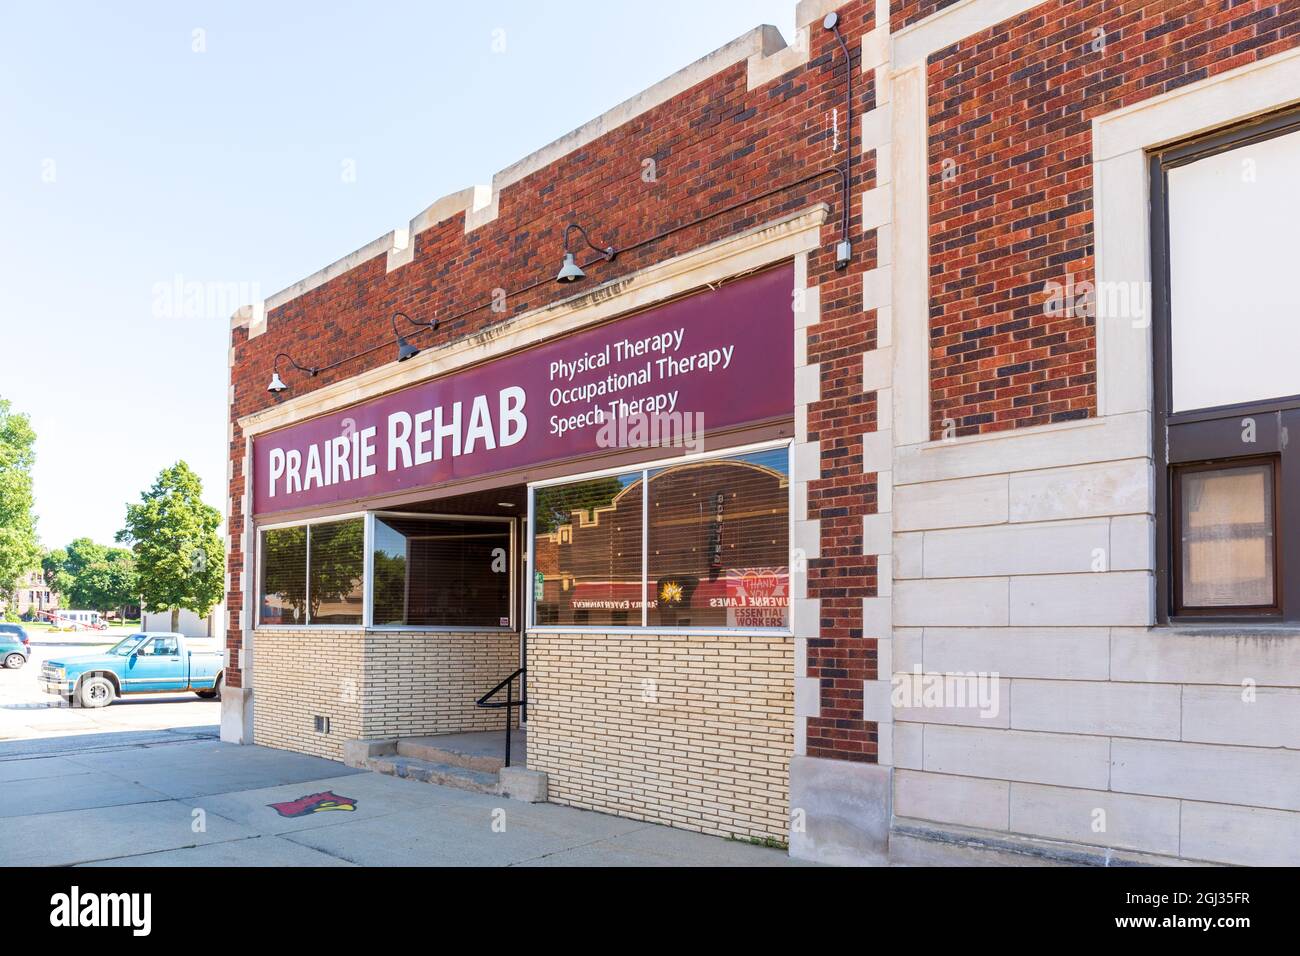 LUVERNE, MN, USA-21 AGOSTO 2021: Prairie Rehab-Physical Therapy, Occupational Therapy, Speech Therapy. Mostra la facciata dell'edificio e il cartello. Foto Stock